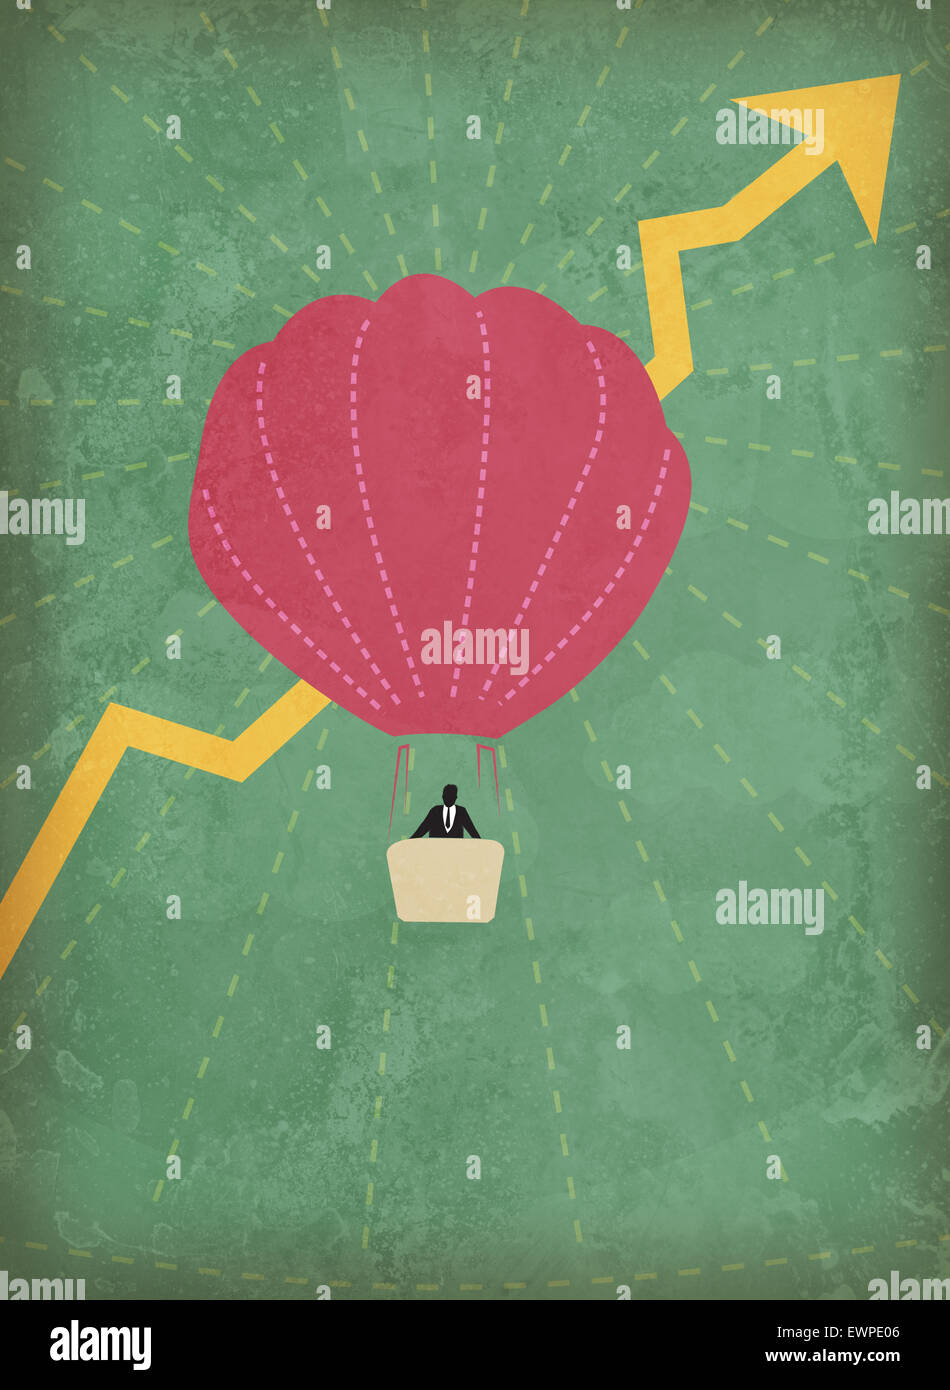 Empresario volando en globo de aire caliente con el aumento en las ganancias Foto de stock